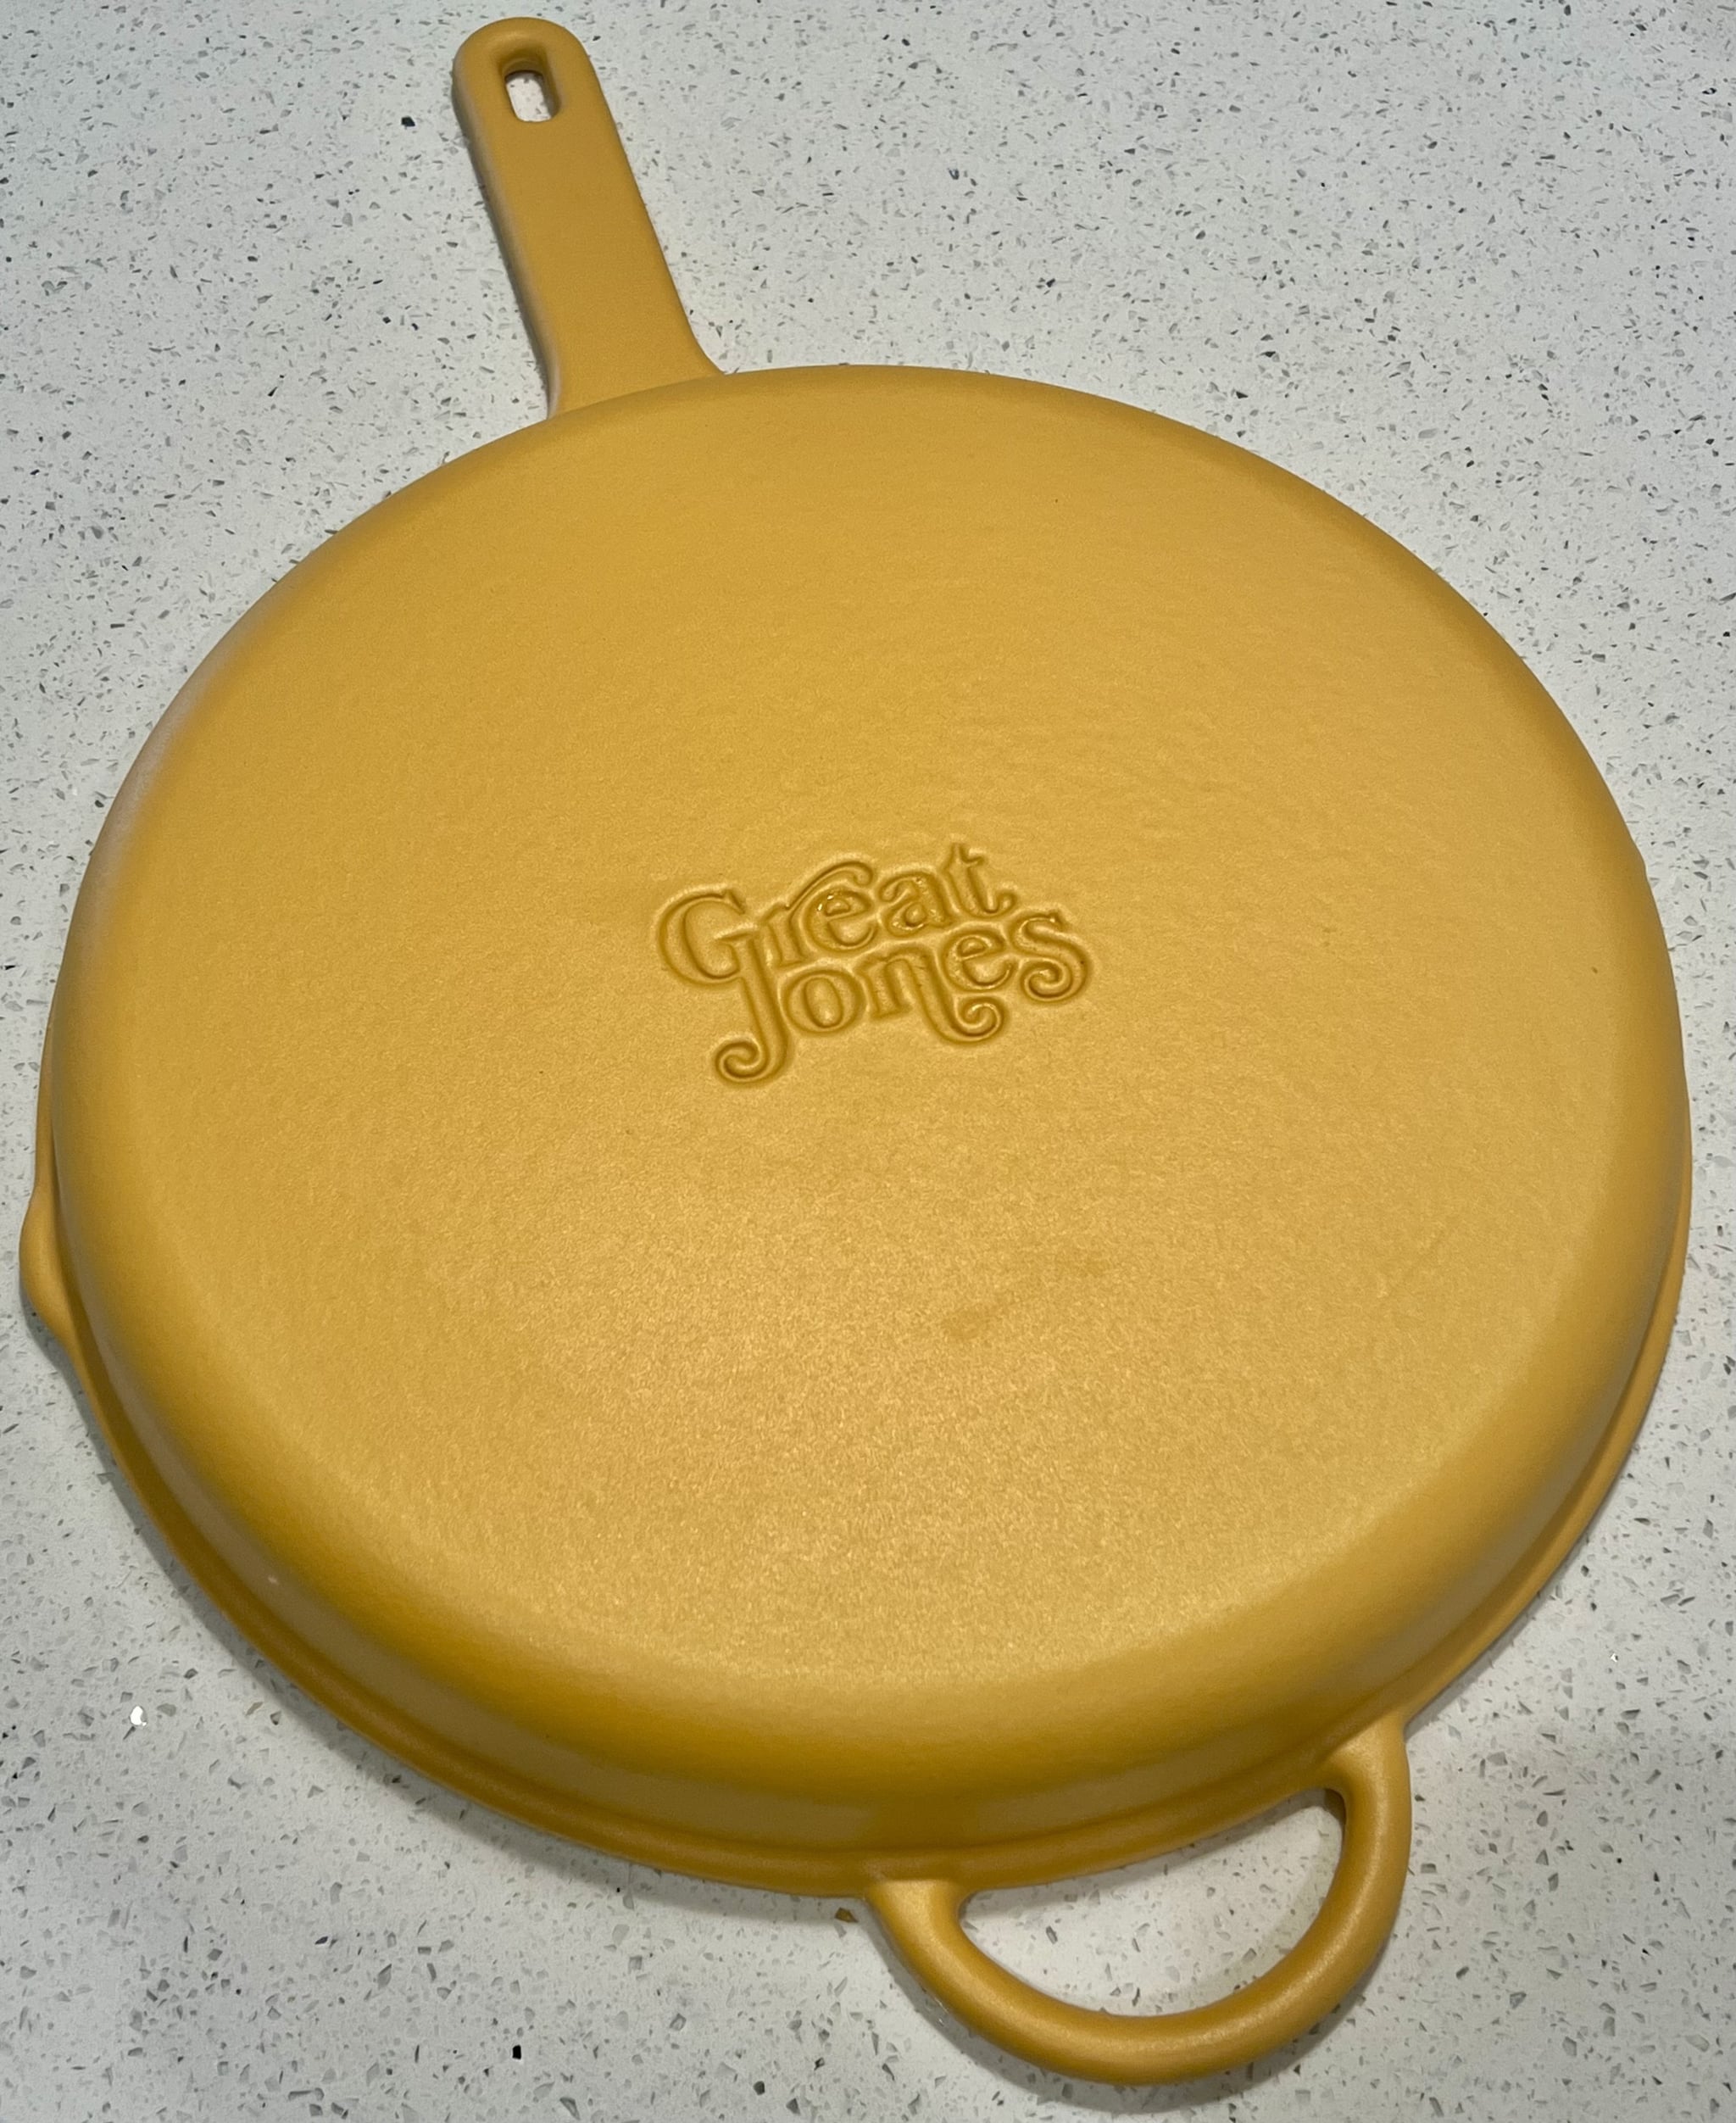 大琼斯王烧焦铸铁锅在芥末黄色颠倒。